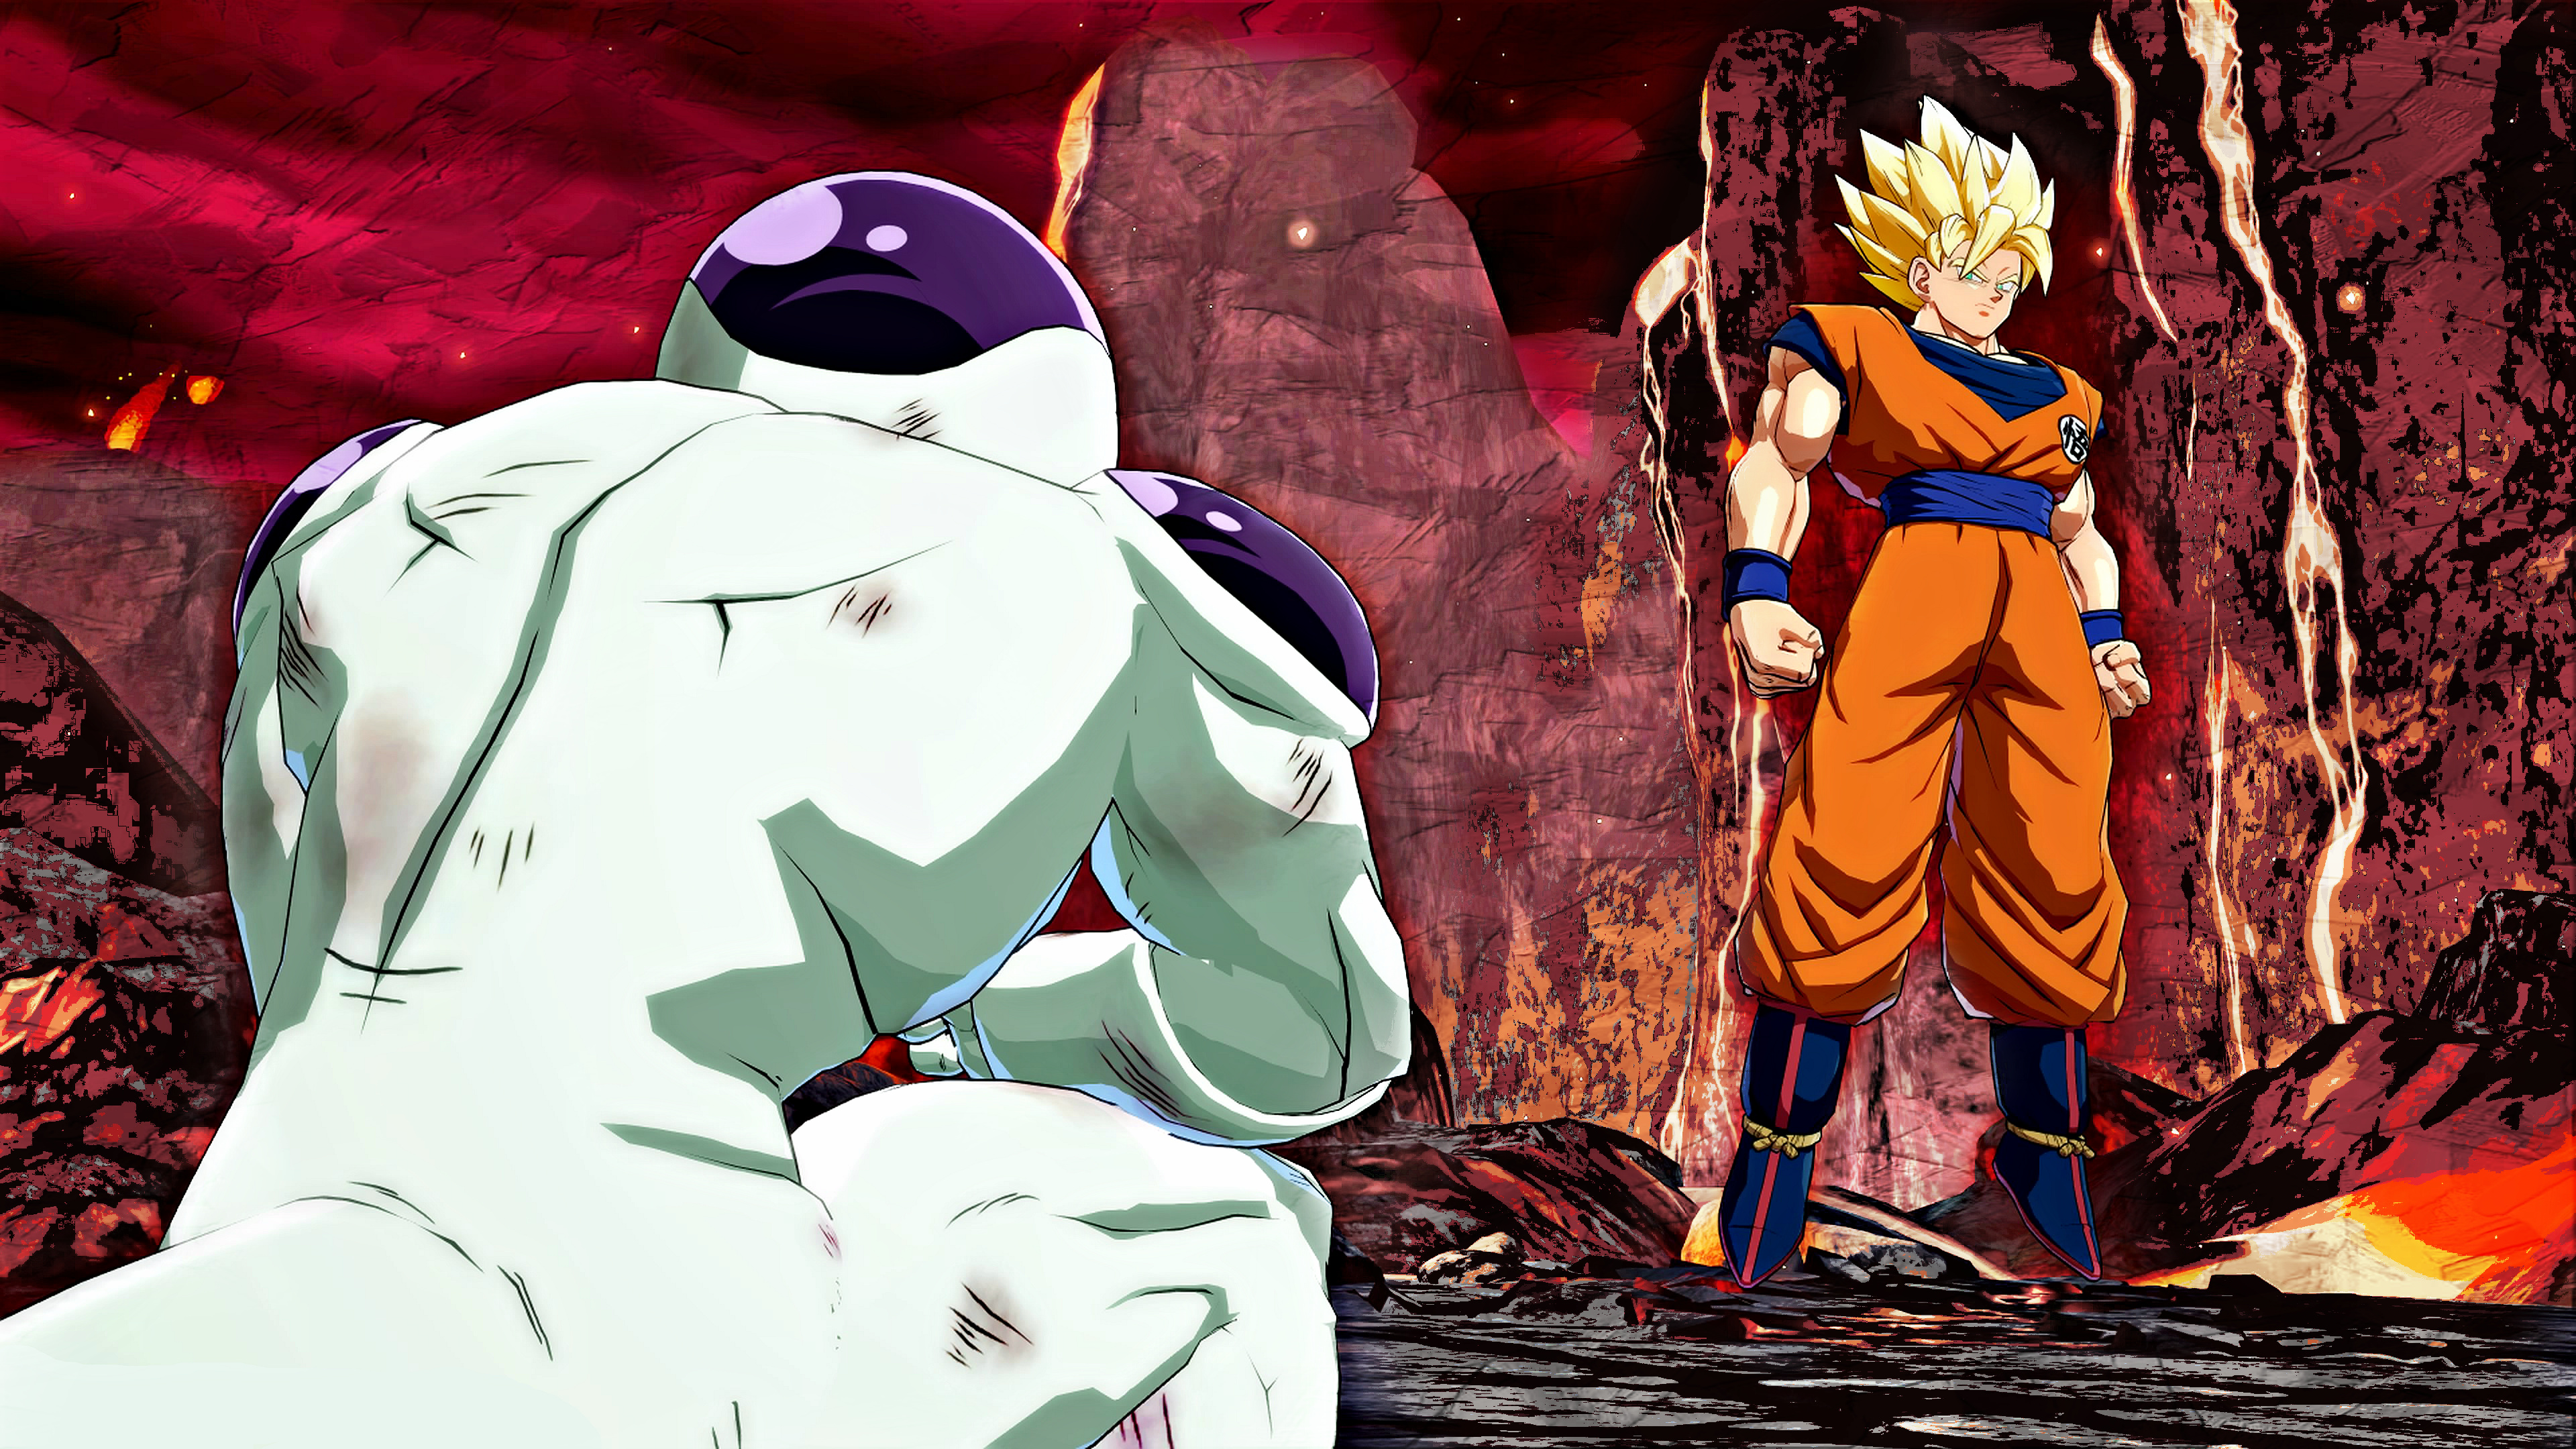 Dragon Ball Z Abridged, Goku vs Frieza, Intense battle, Ultimate showdown, 3840x2160 4K Desktop